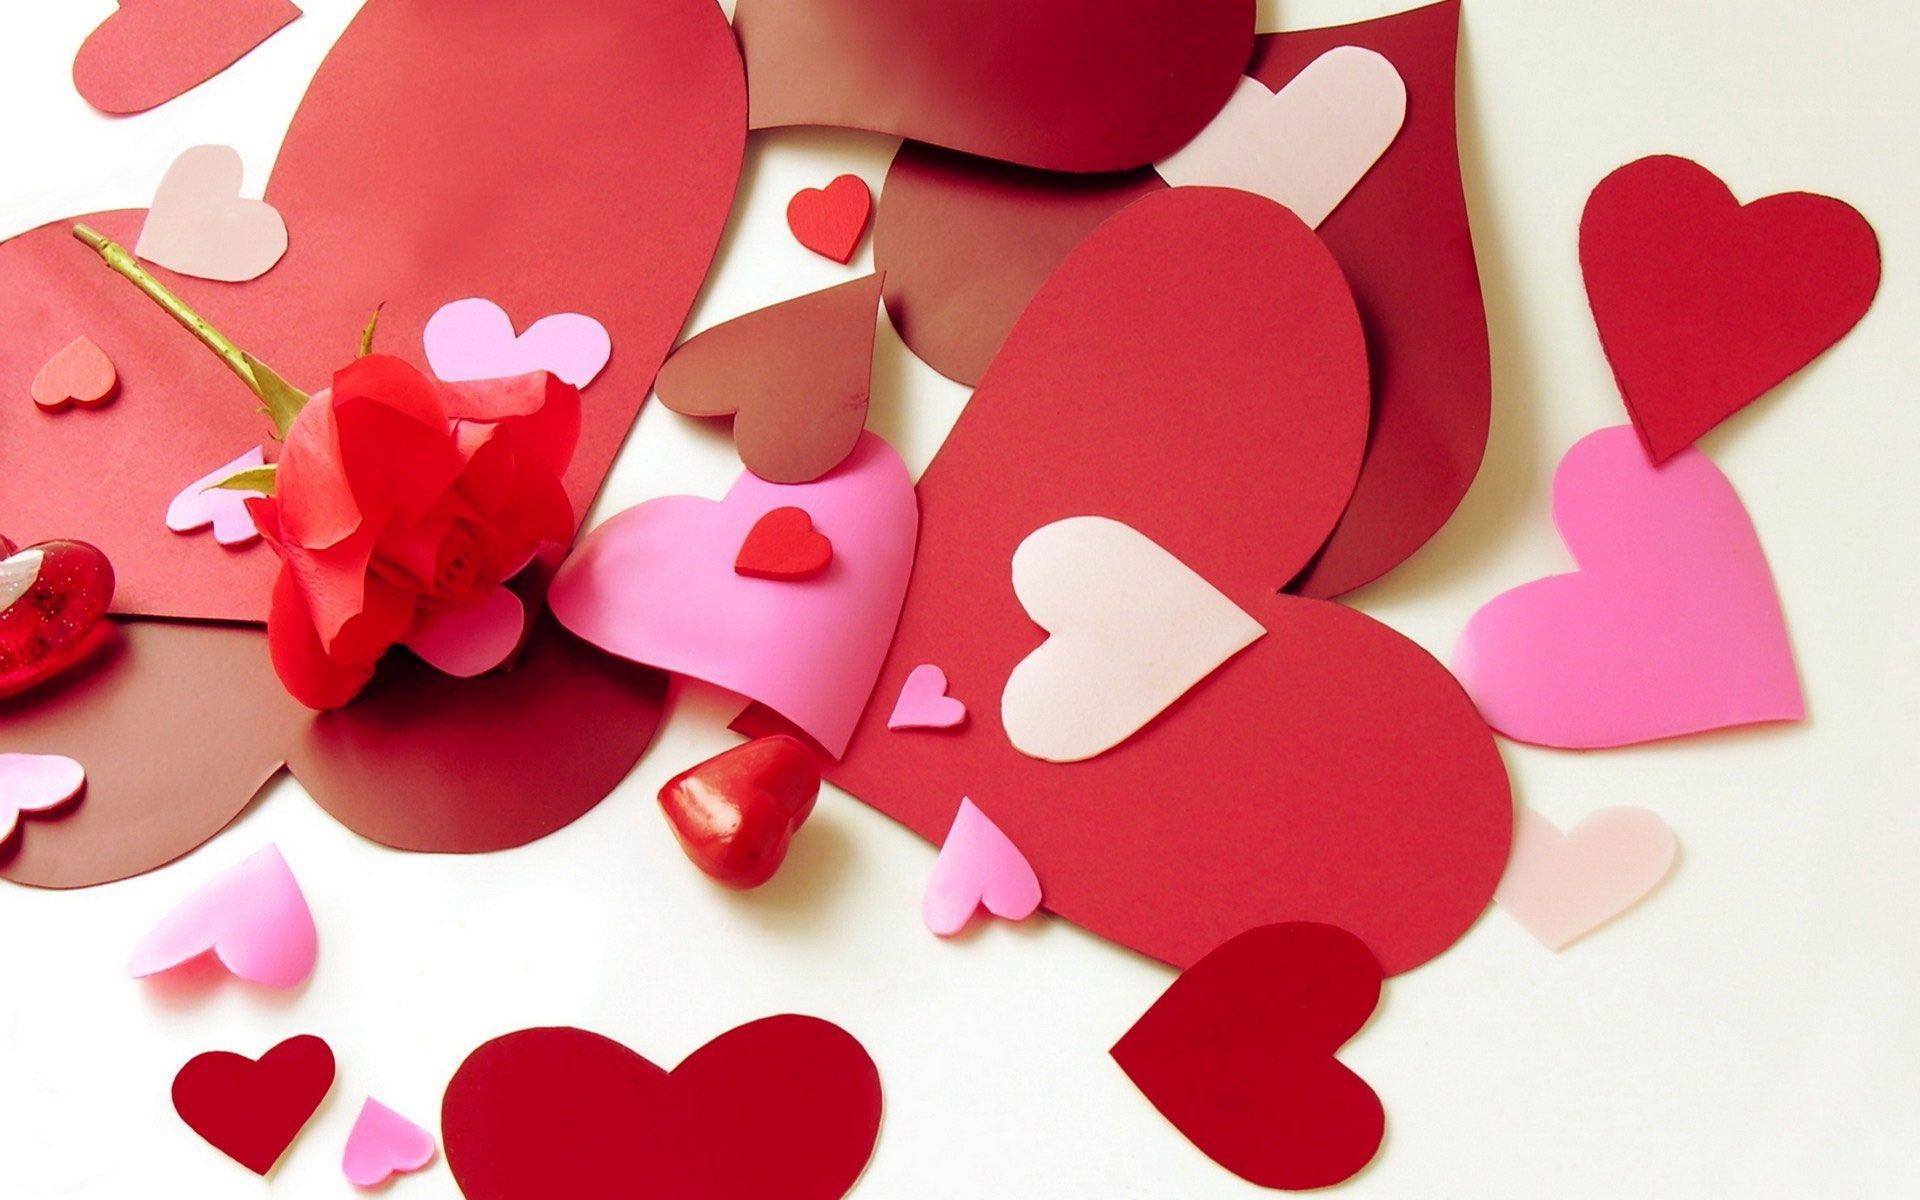 Cute Love Heart Wallpaper HD Free Pink Heart Wallpaper in Download